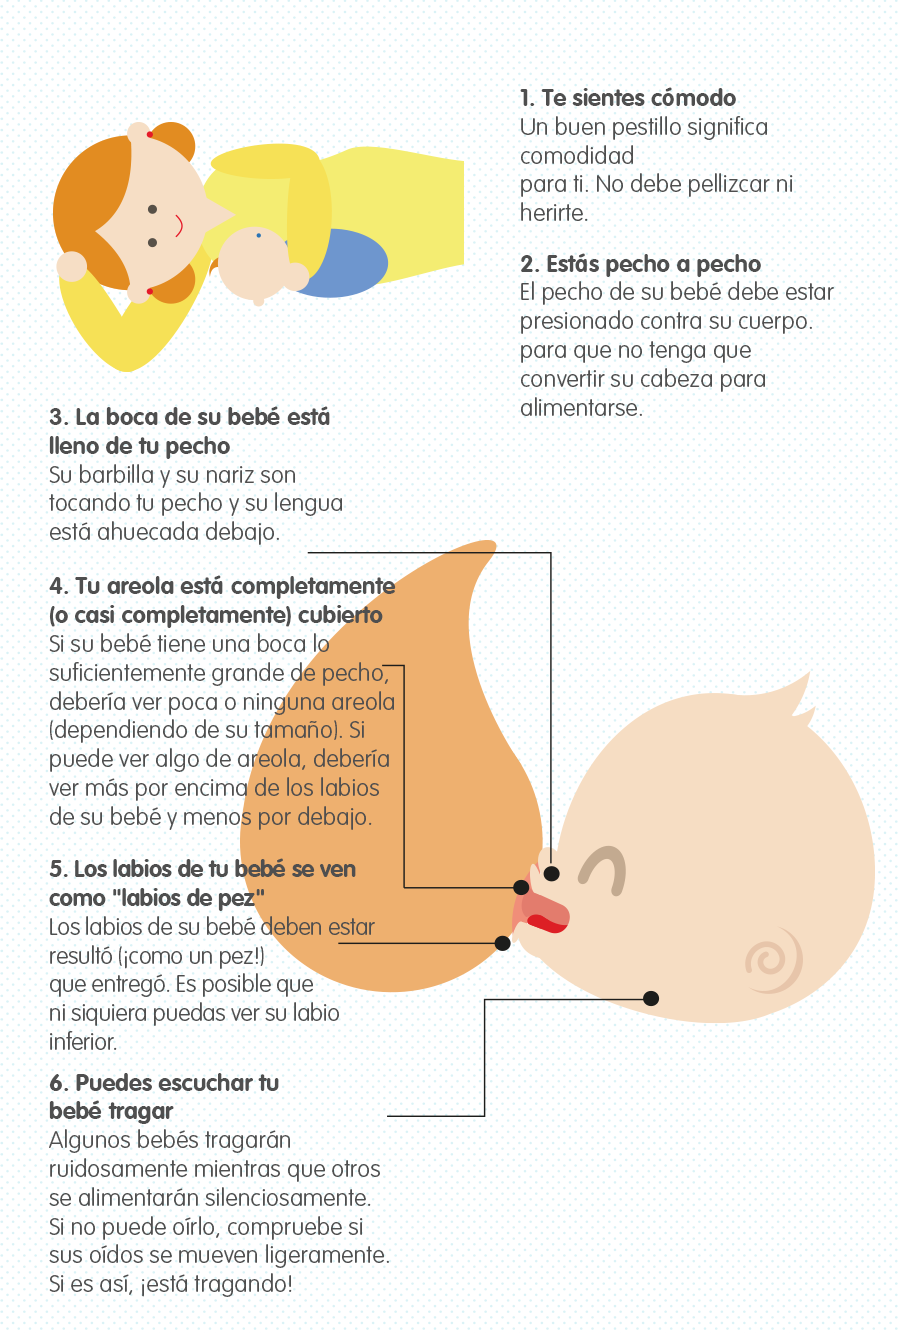 Infografía lactancia materna: tips para dar leche